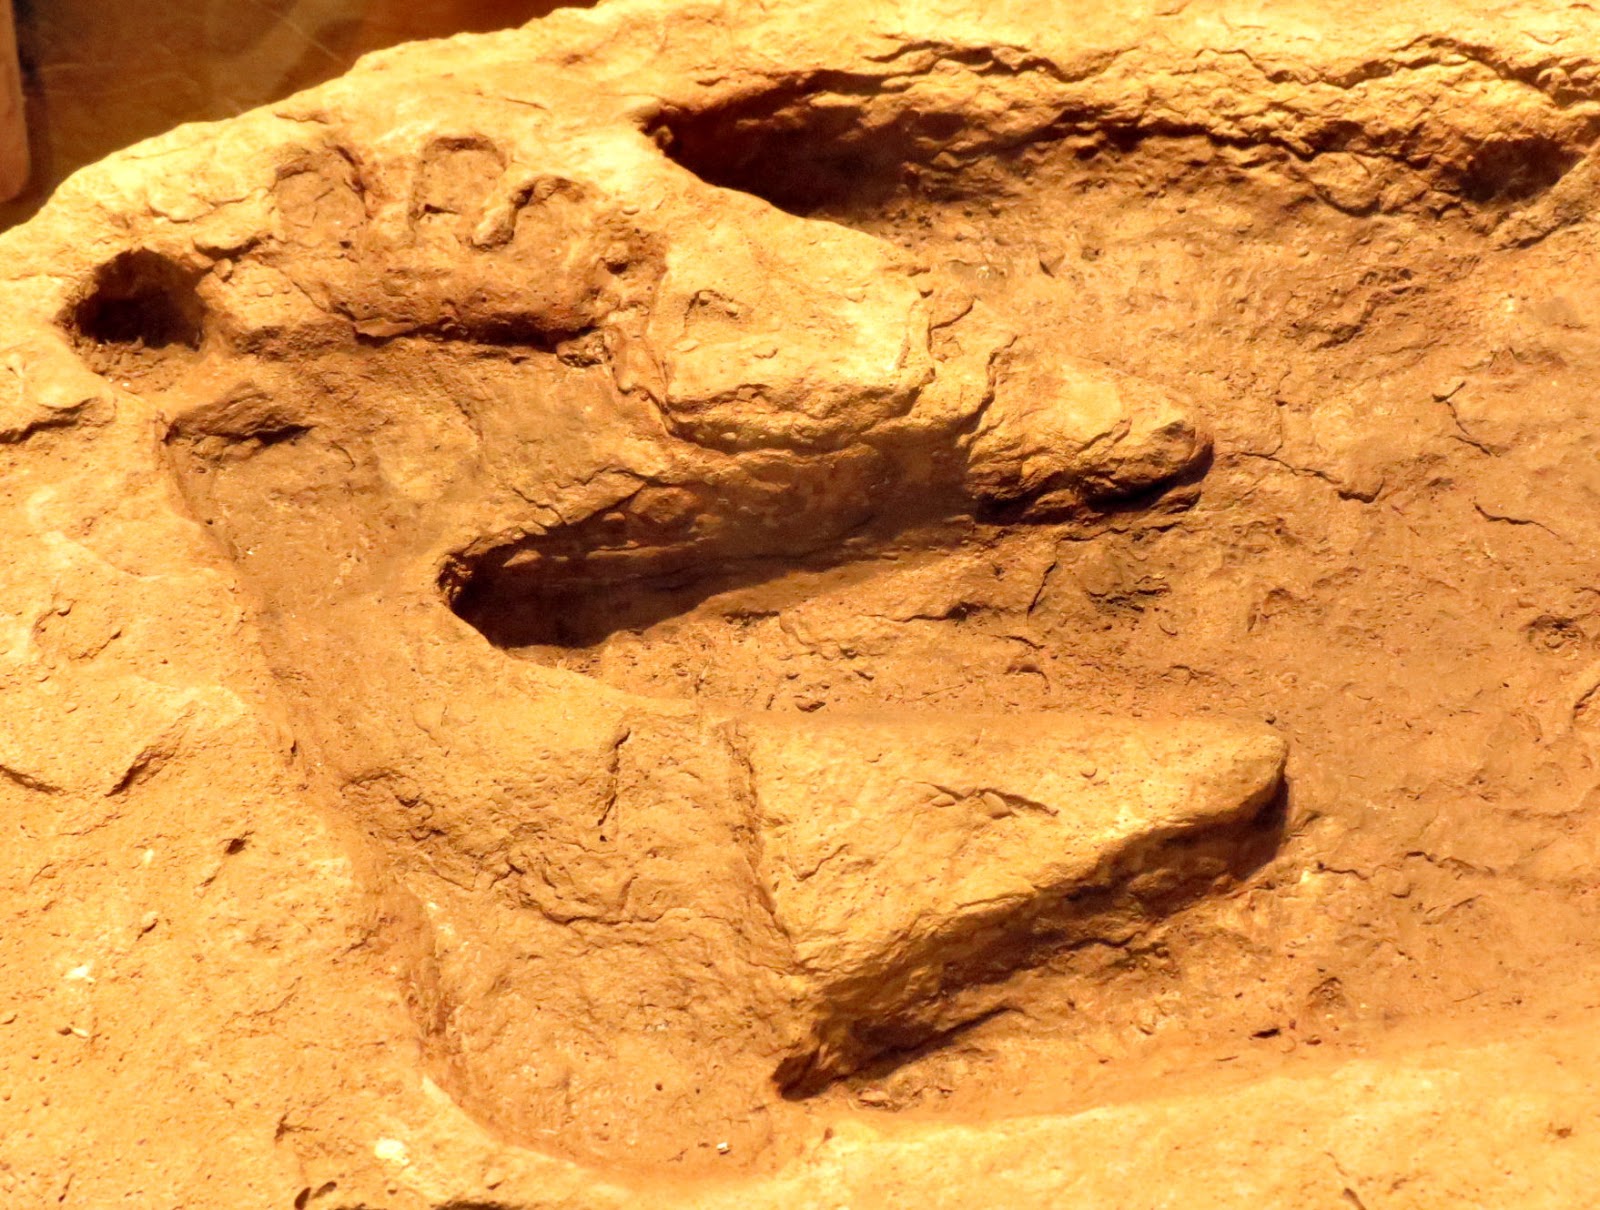 След динозавра в горной породе. Койтендаг Туркменистан следы динозавров. Окаменелые следы динозавров. Окаменелые следы человека и динозавра. Глен Роуз следы человека и динозавра.